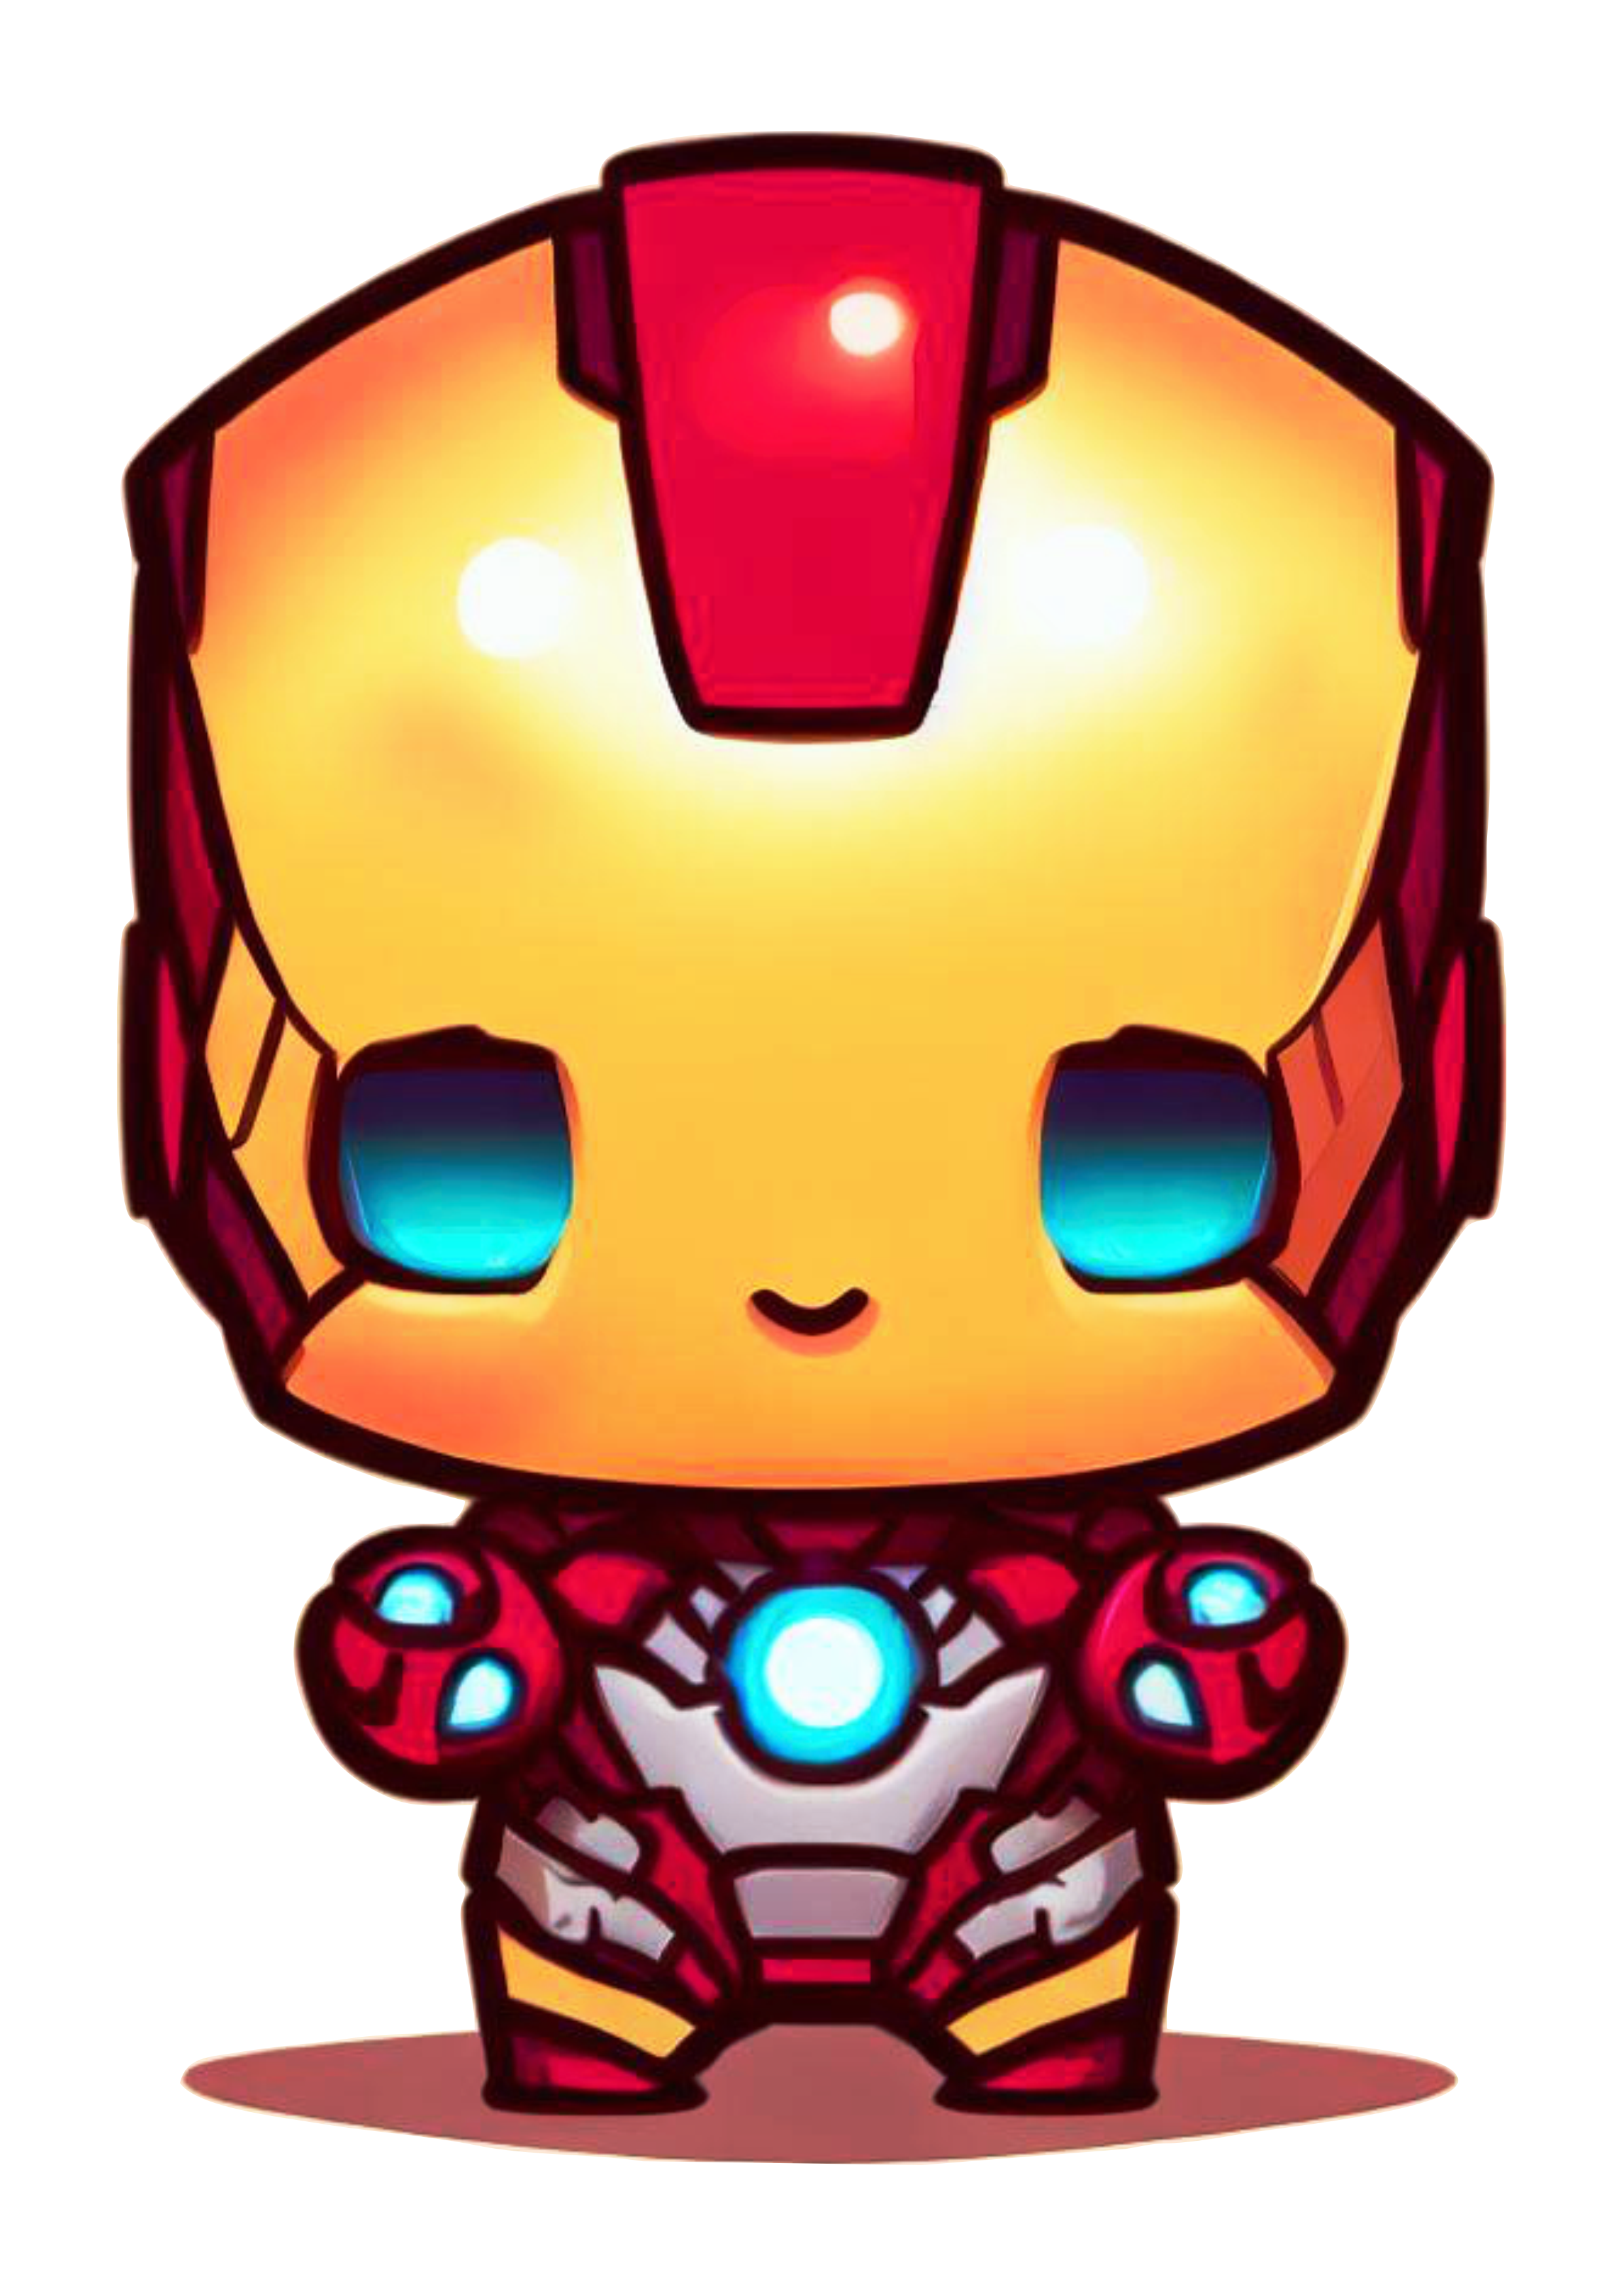 Homem de ferro bonequinho fofinho cute chibi marvel comics HQ de super herói fundo transparente png